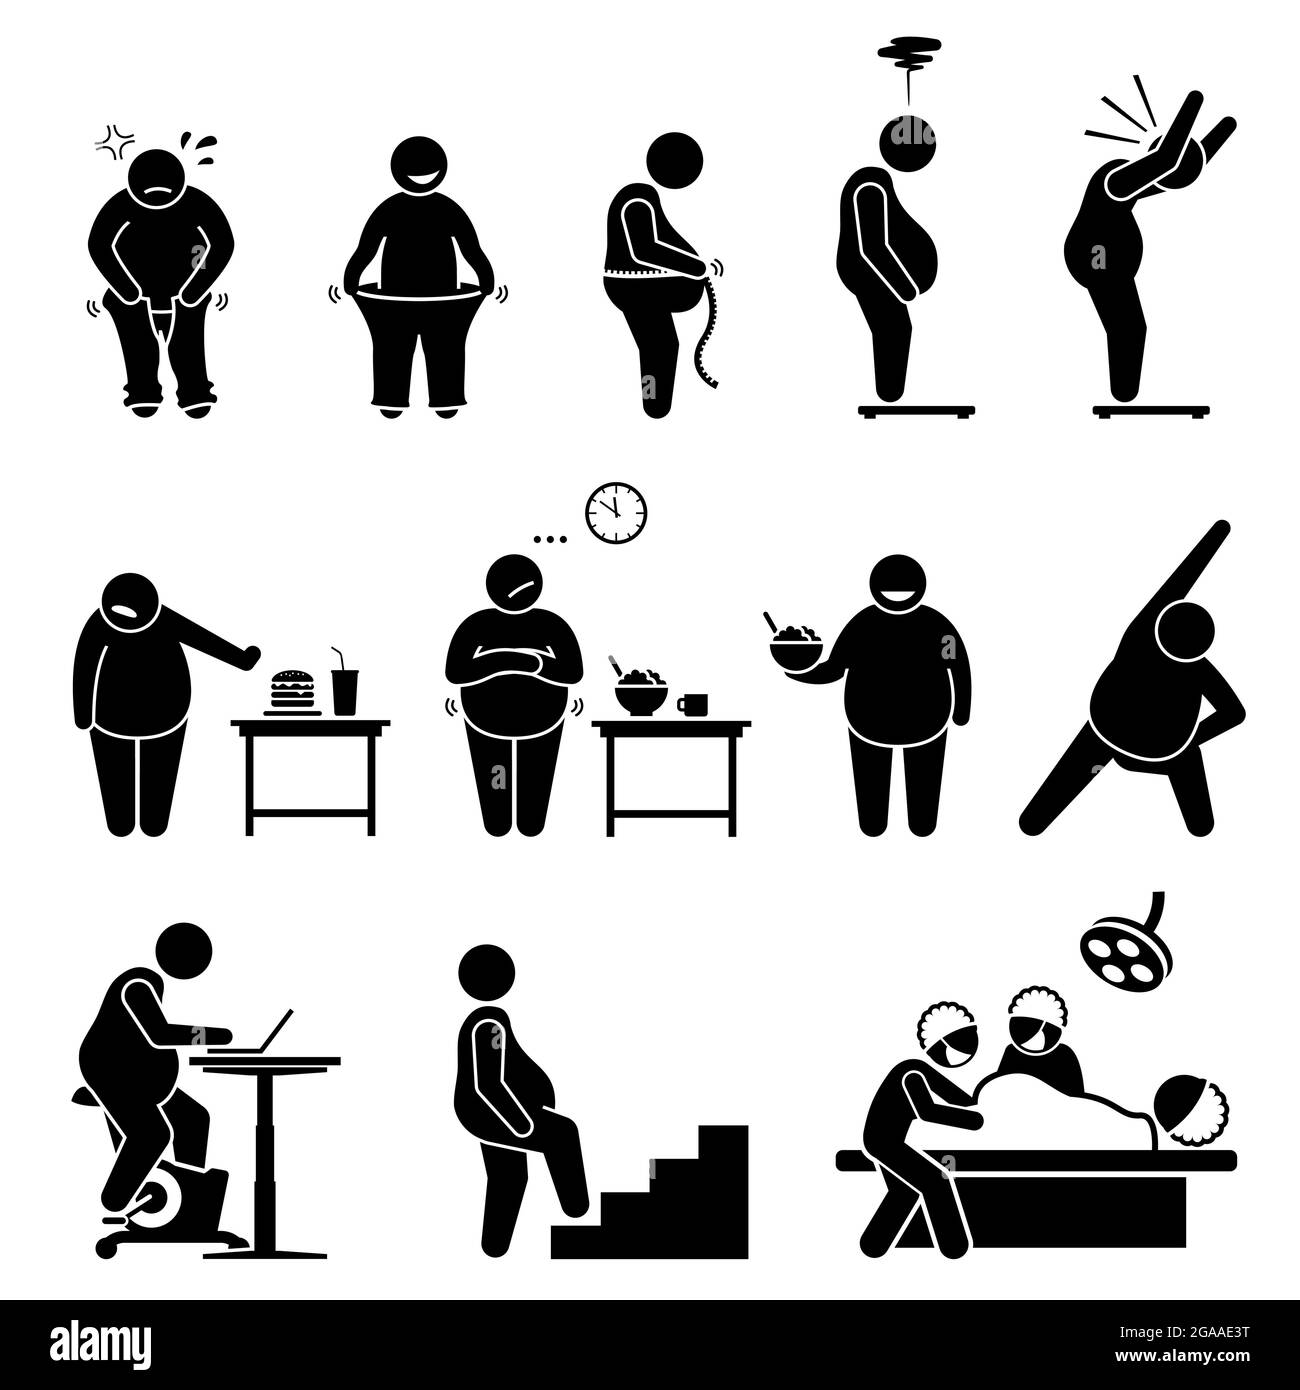 Grasso uomo perdita di peso dieta di esercizio e stile di vita sano per diventare più sottile. Illustrazioni vettoriali rappresentano un uomo obeso su scala di peso, indossando pantaloni, ea Illustrazione Vettoriale